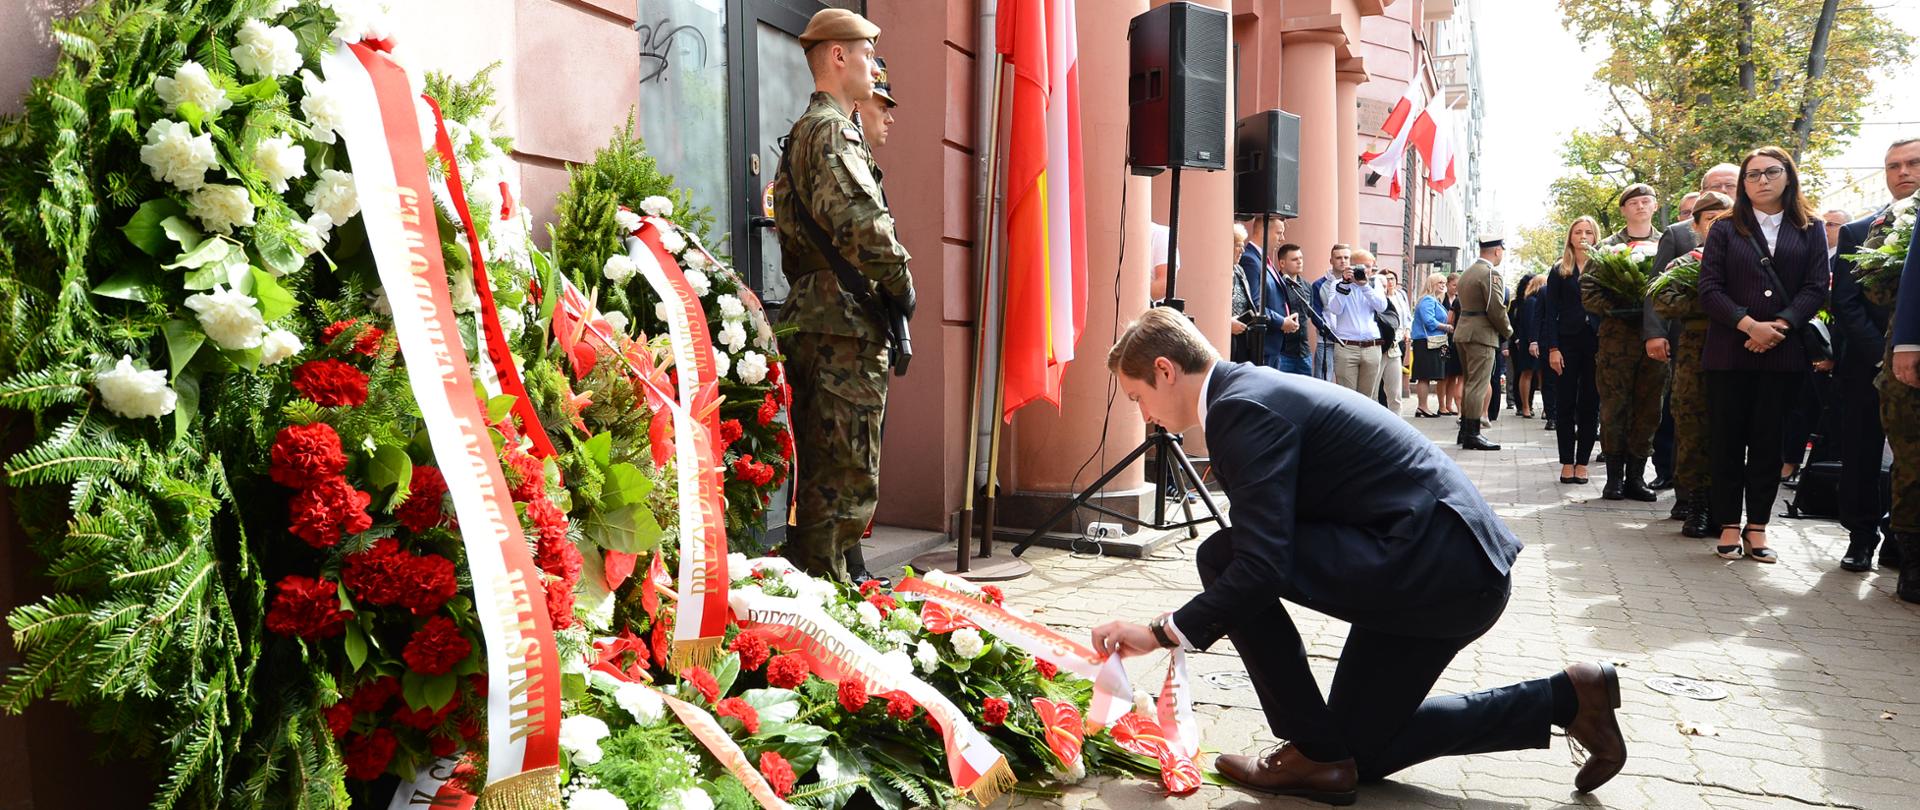 Ministerstwo Sprawiedliwości uczciło 75. rocznicę wybuchu Powstania Warszawskiego